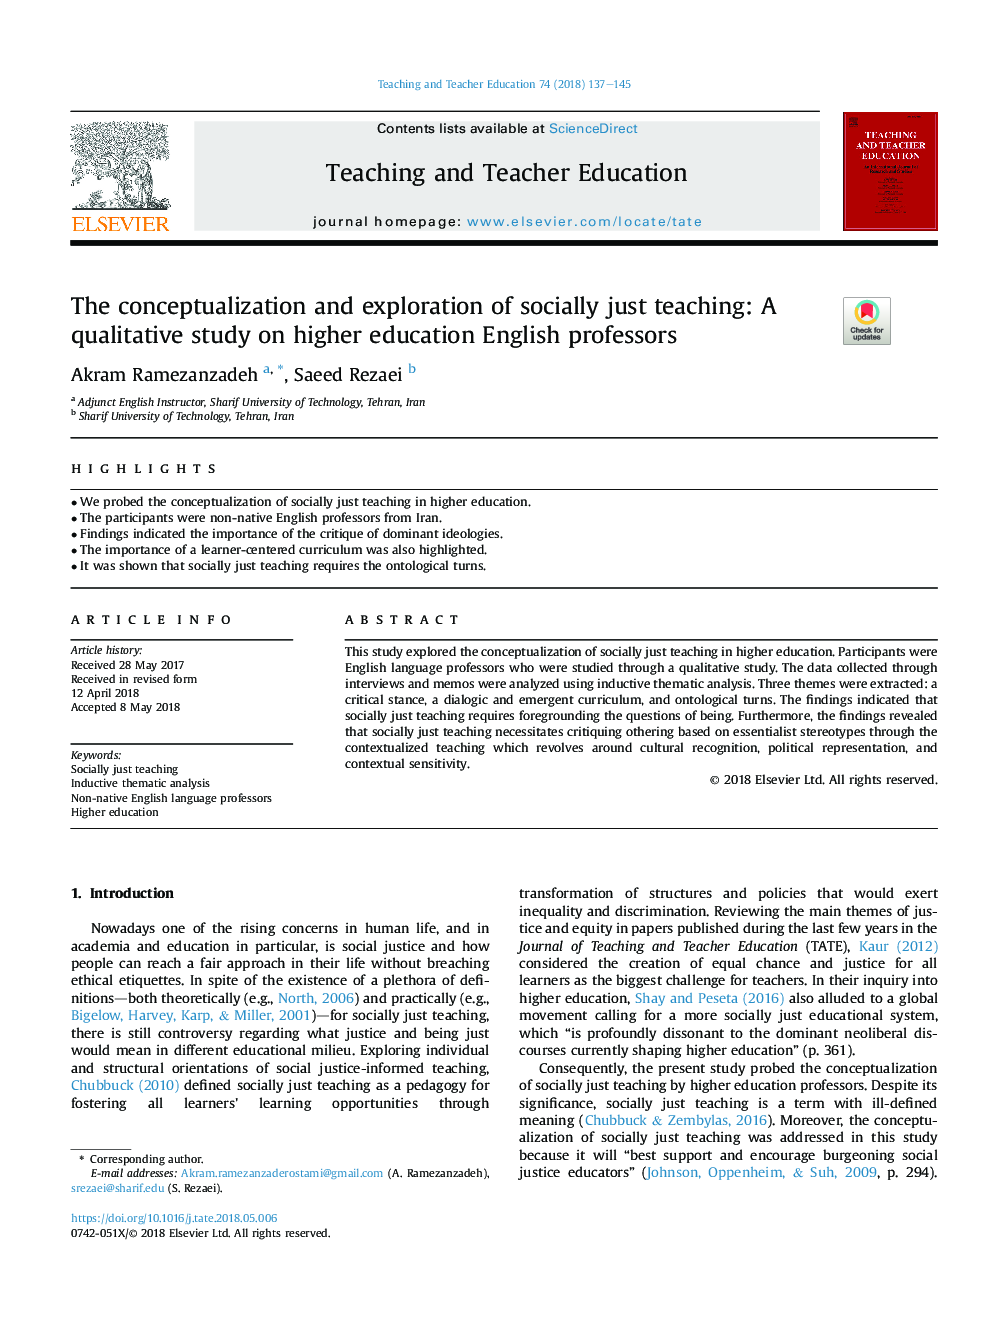 مفهوم سازی و اکتشاف اجتماعی فقط آموزش: یک مطالعه کیفی در مورد استادان تحصیلات عالی انگلیسی 